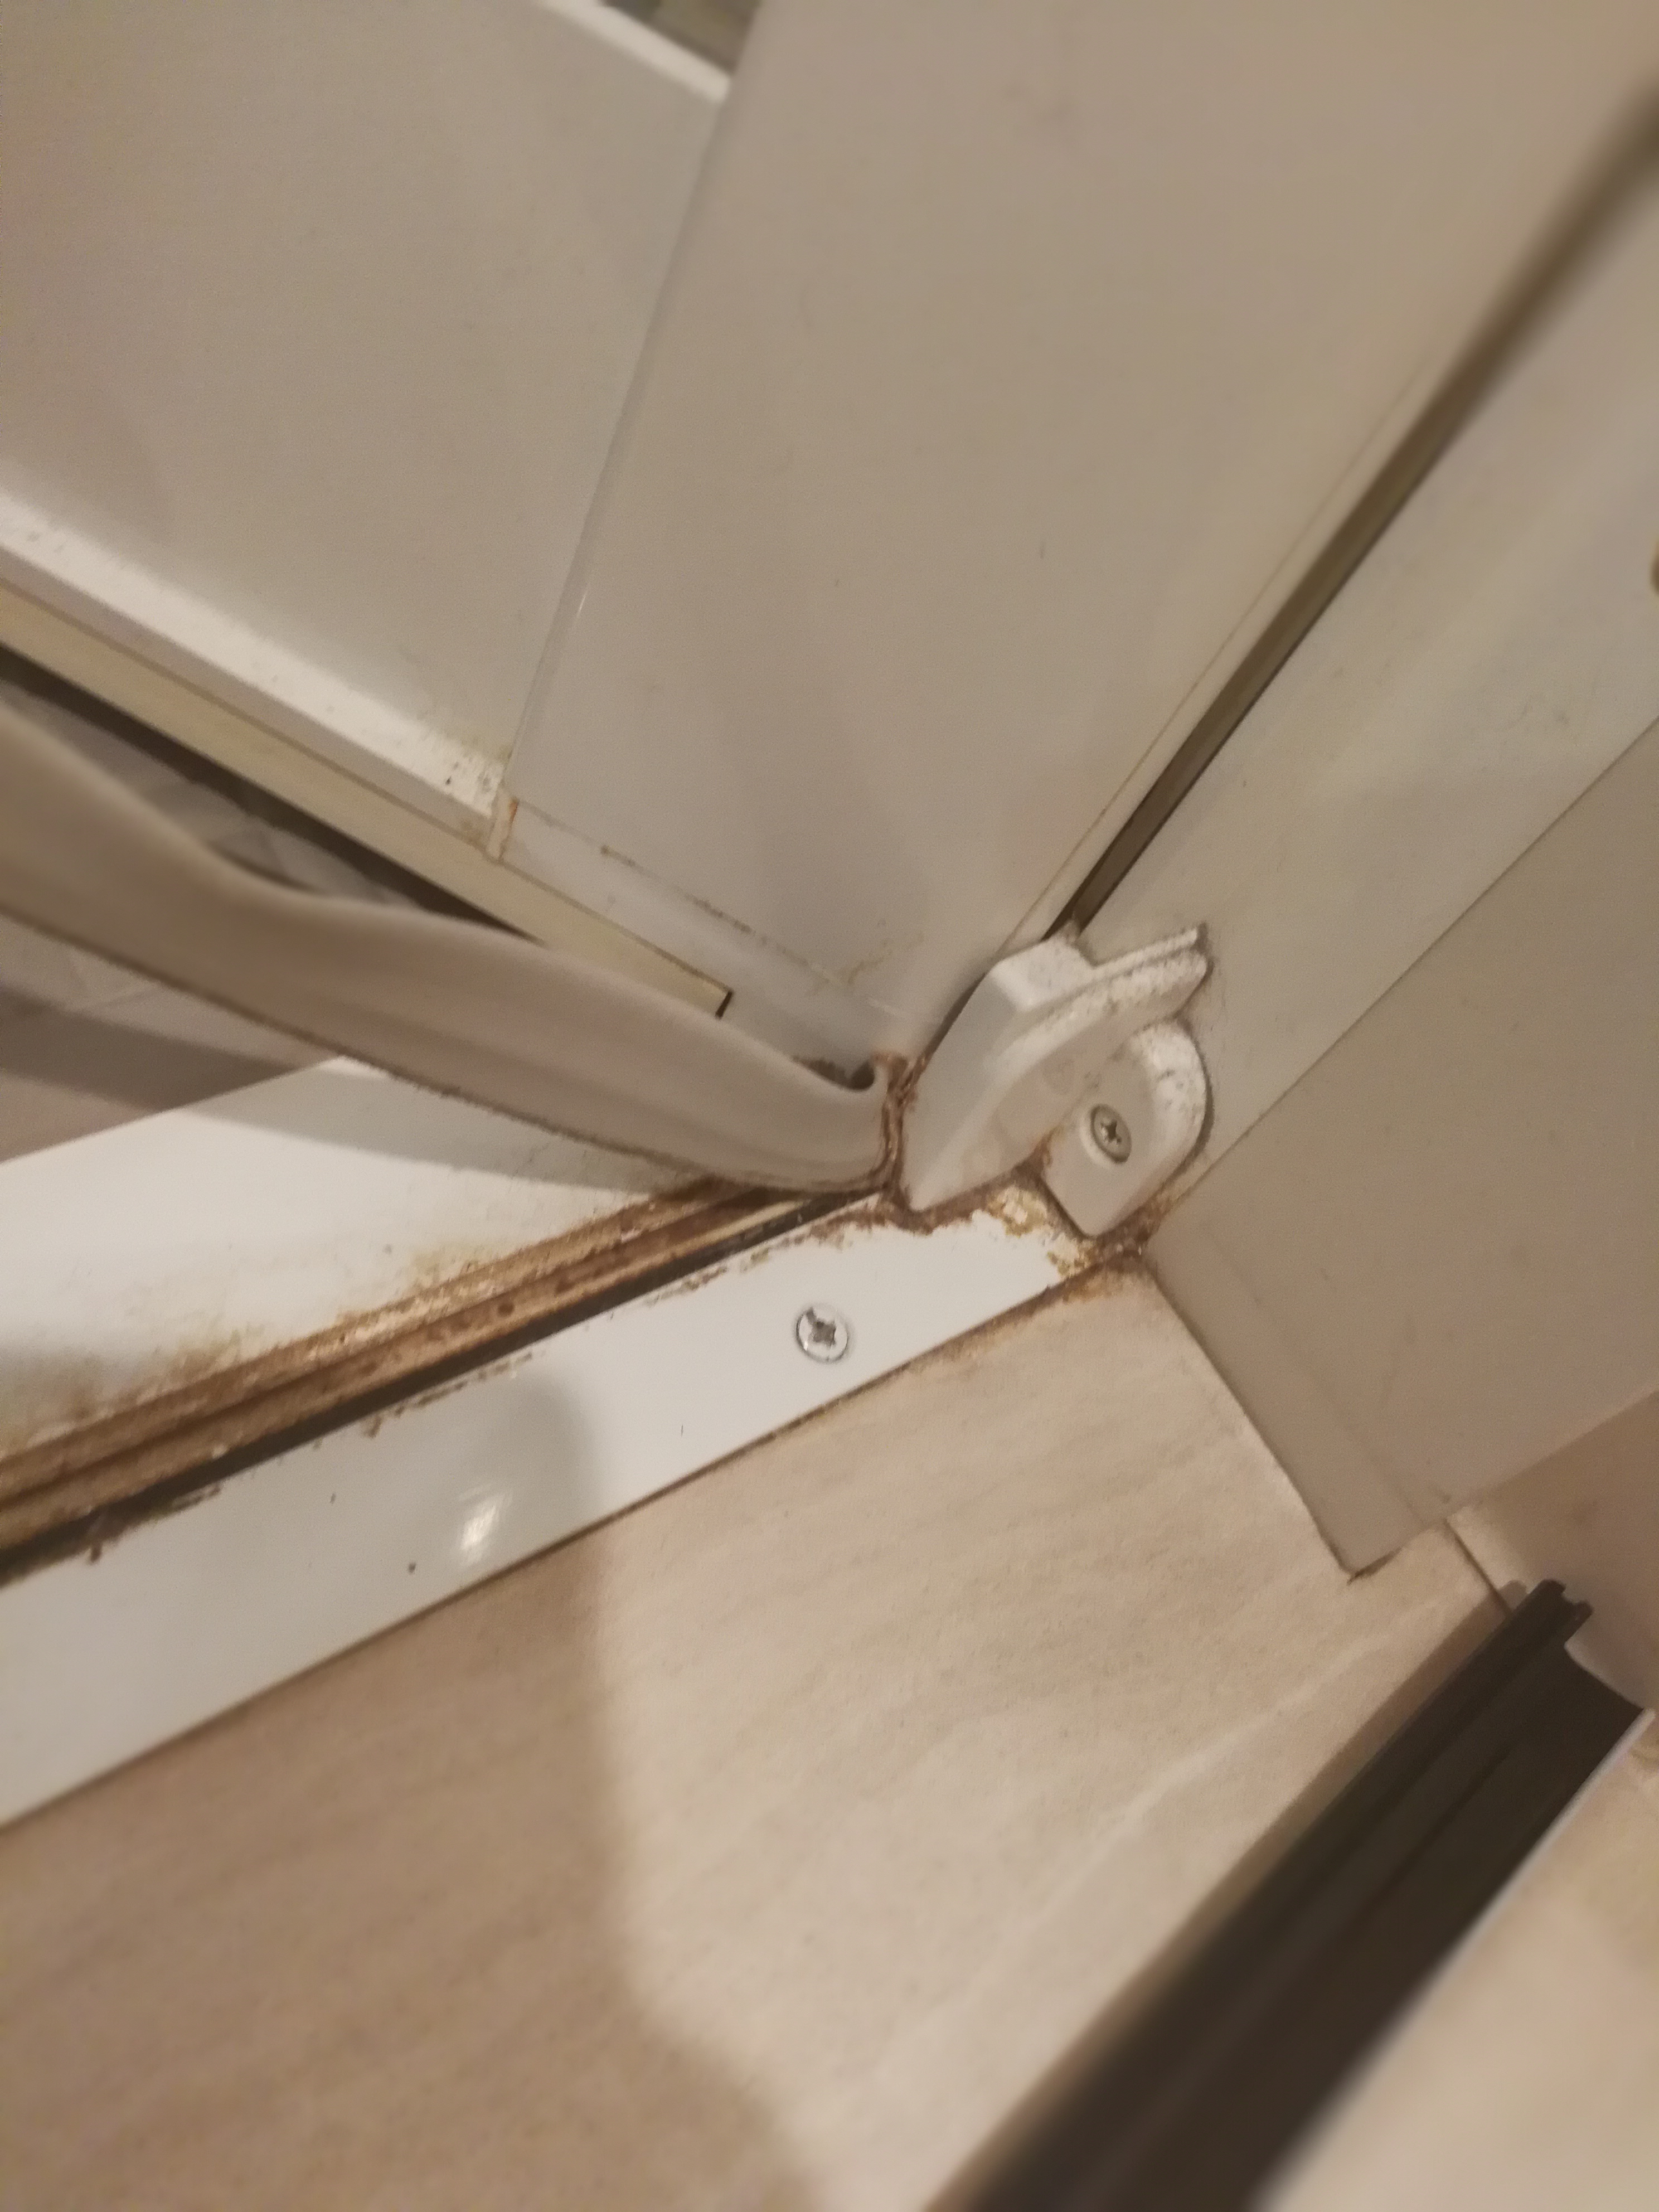 浴室ドアのパッキン(タイト材)を自分で交換すると実は結構簡単な上¥10,000くらい節約できた biborog